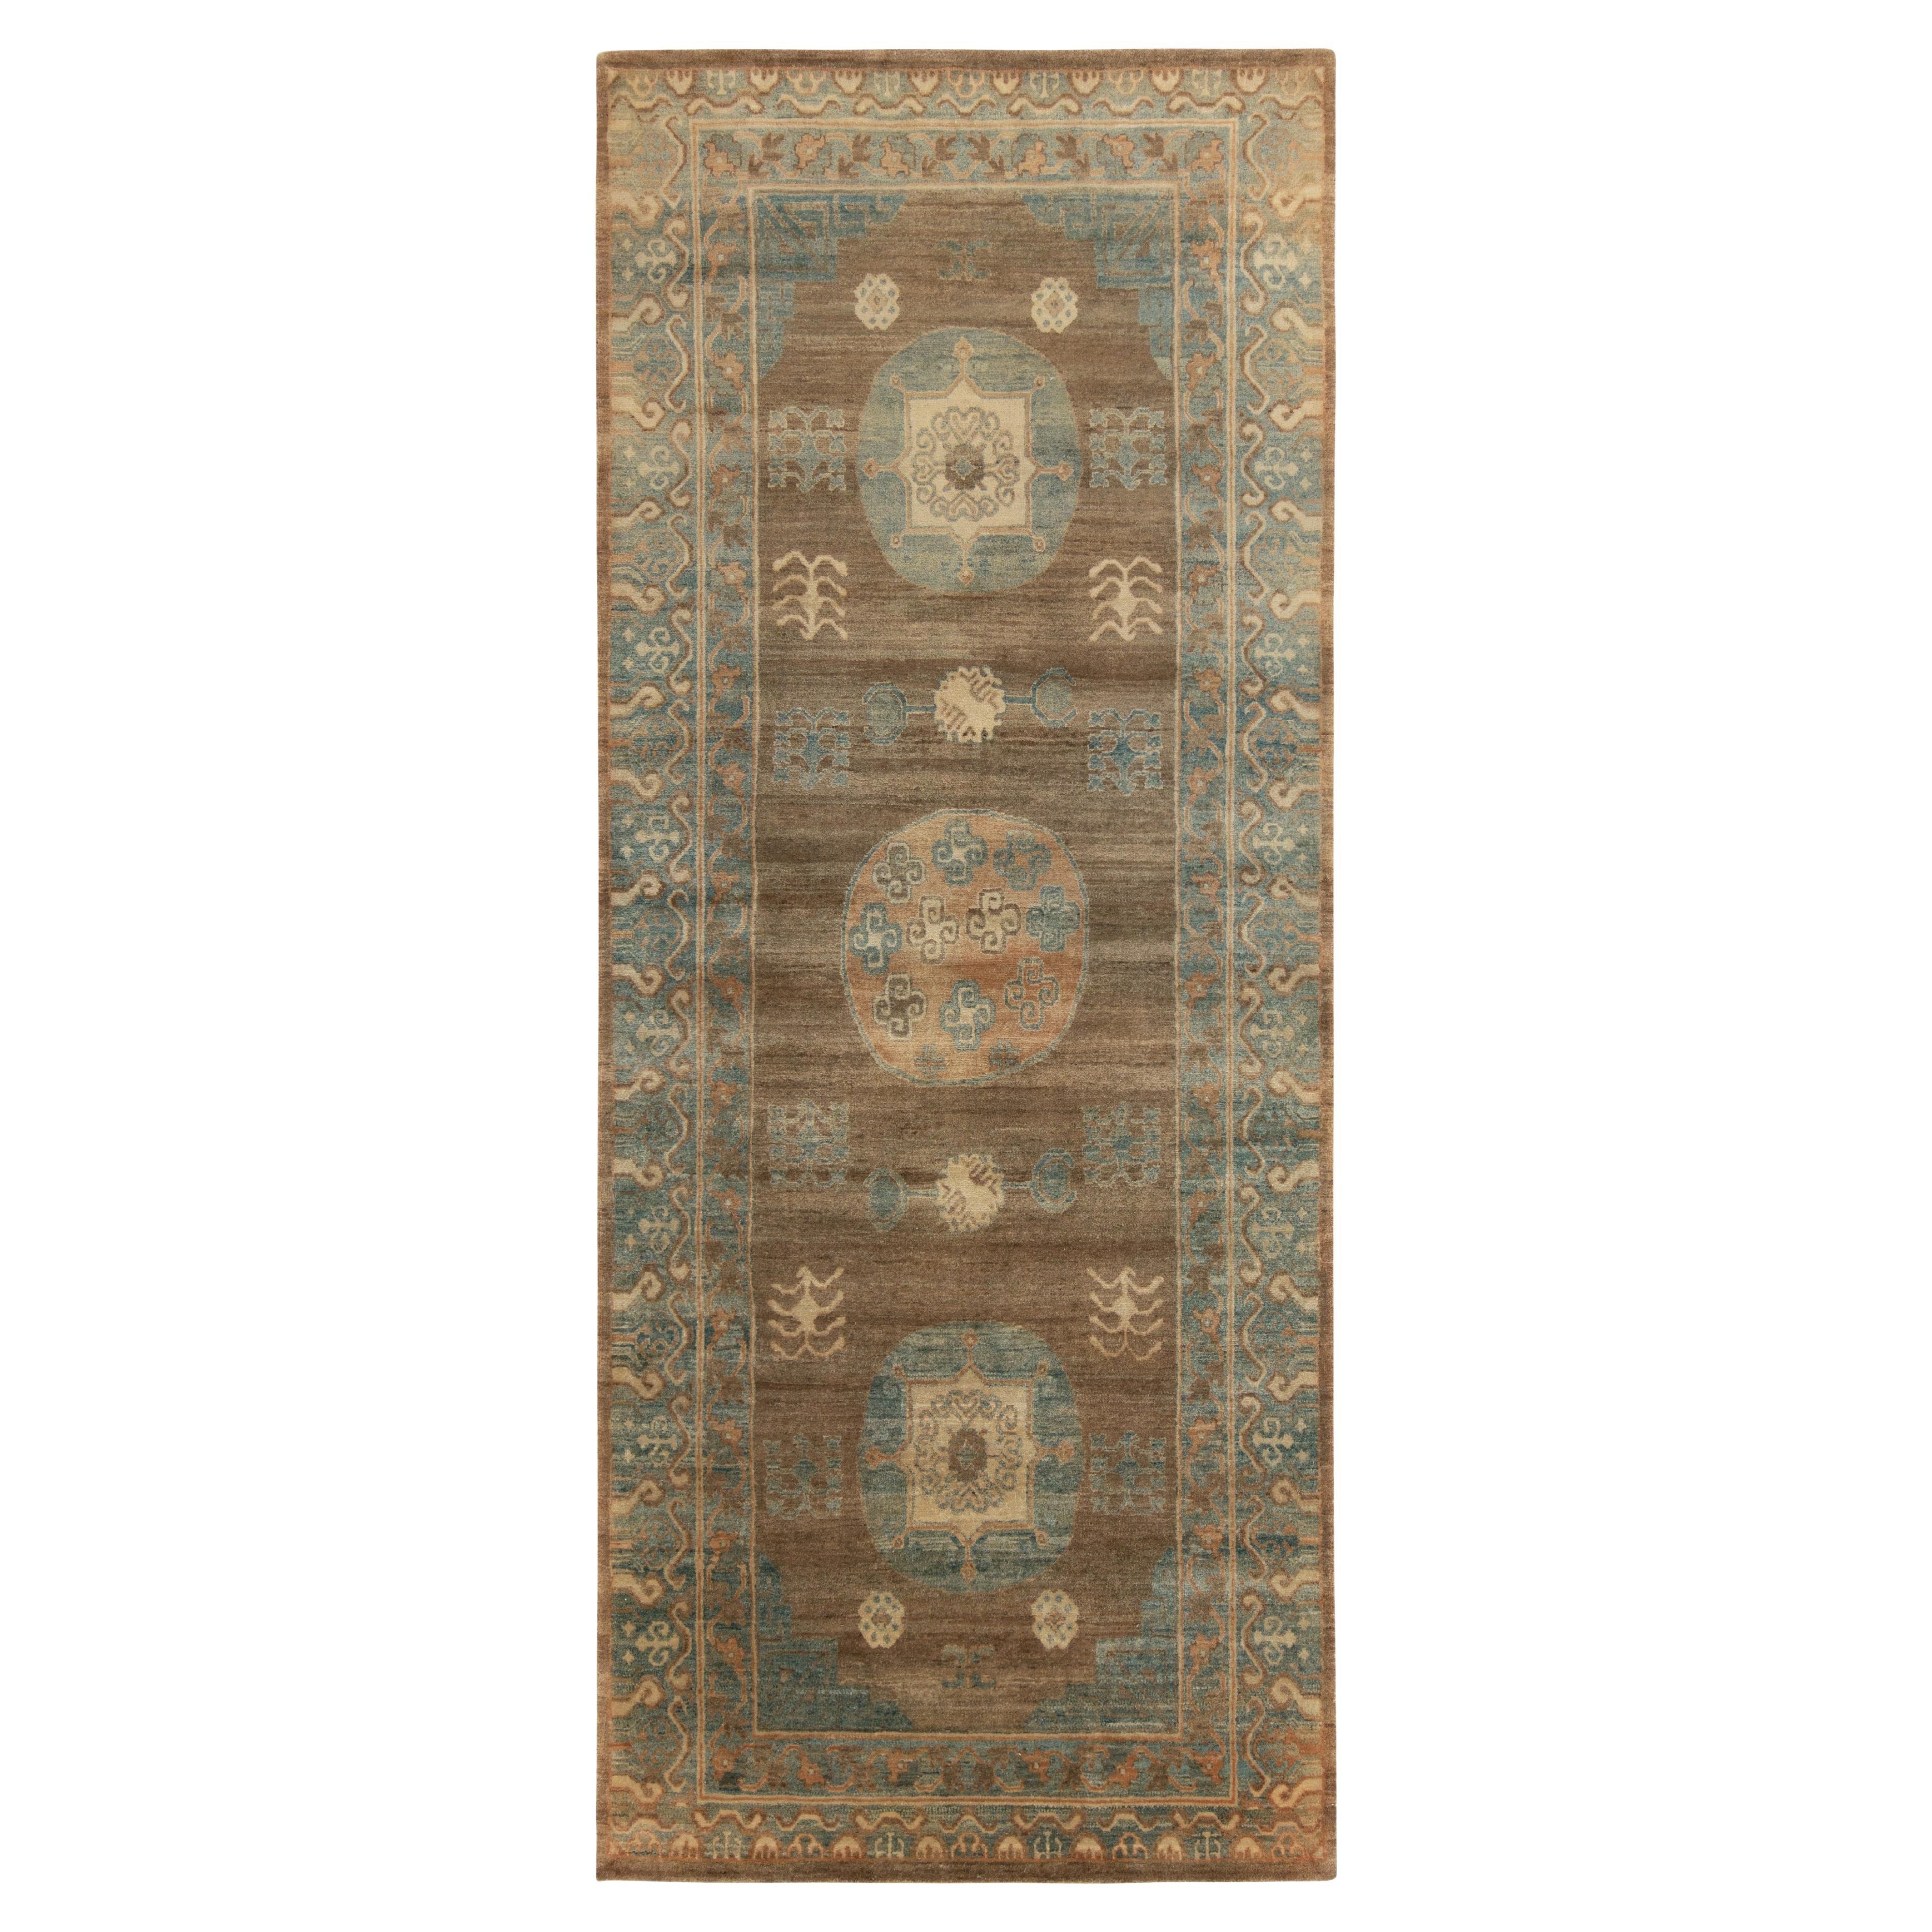 Tapis et tapis Kilims Khotan de style Samarkand en médaillon beige-marron et bleu